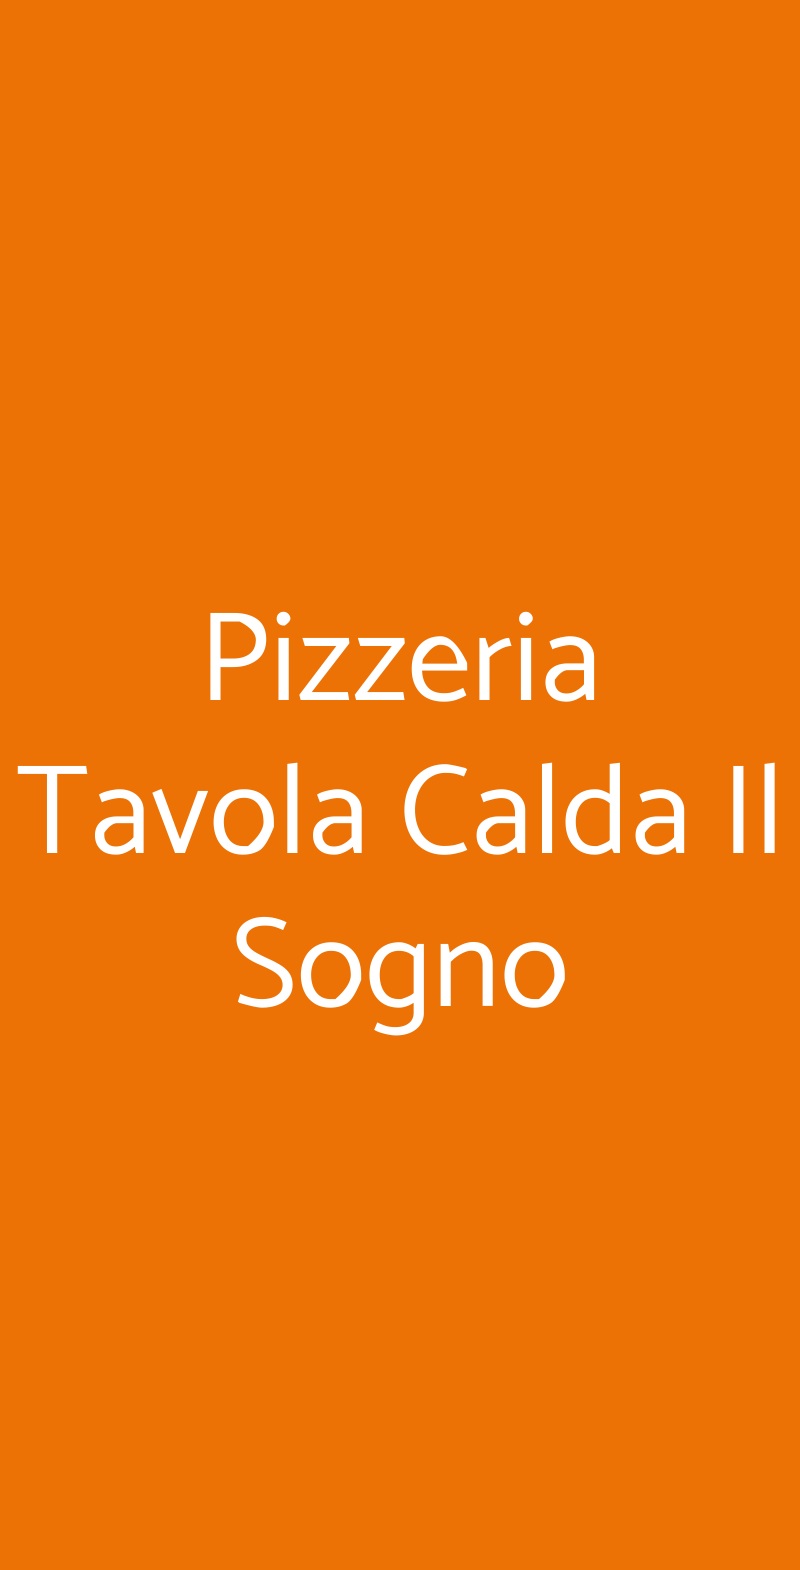 Pizzeria Tavola Calda Il Sogno Roma menù 1 pagina